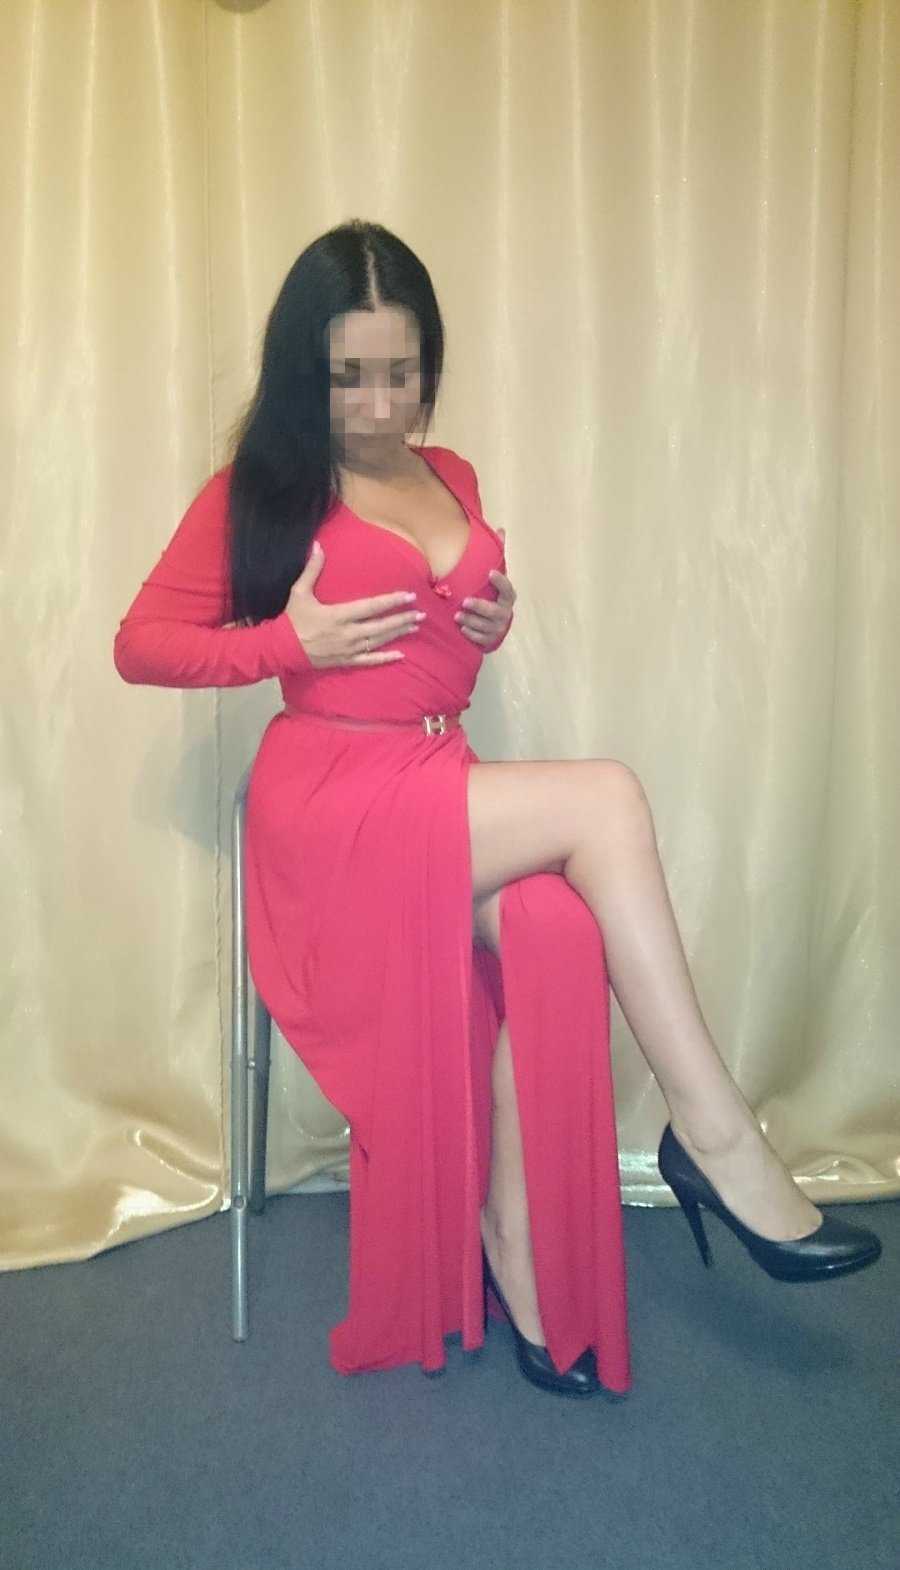 Проститутки Киева: Лиза, возраст 35 лет